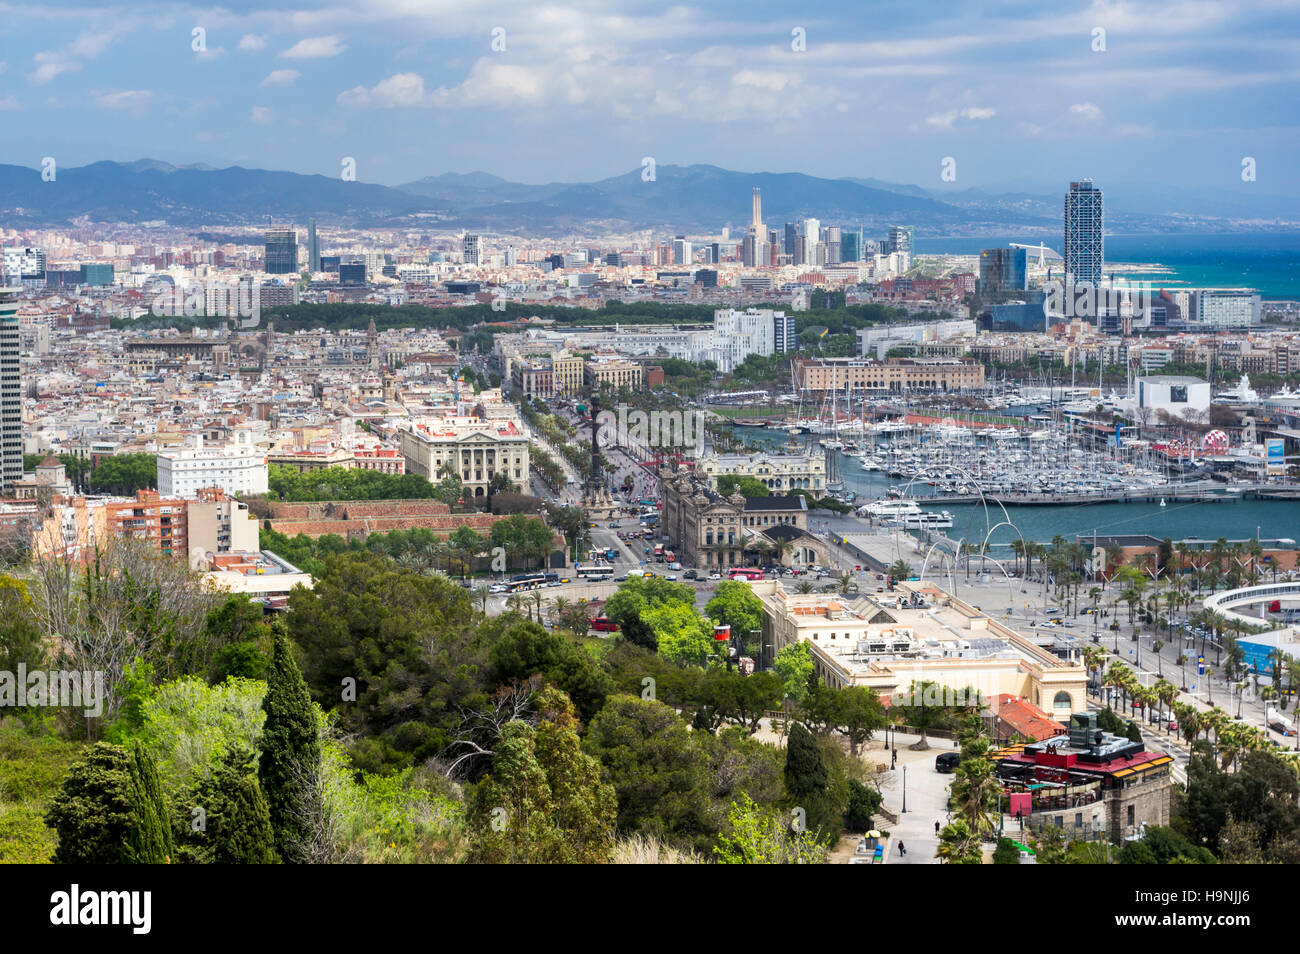 Vista del centro de la ciudad, frente al mar, y el pequeño barco del puerto de Barcelona, Cataluña, España. Foto de stock